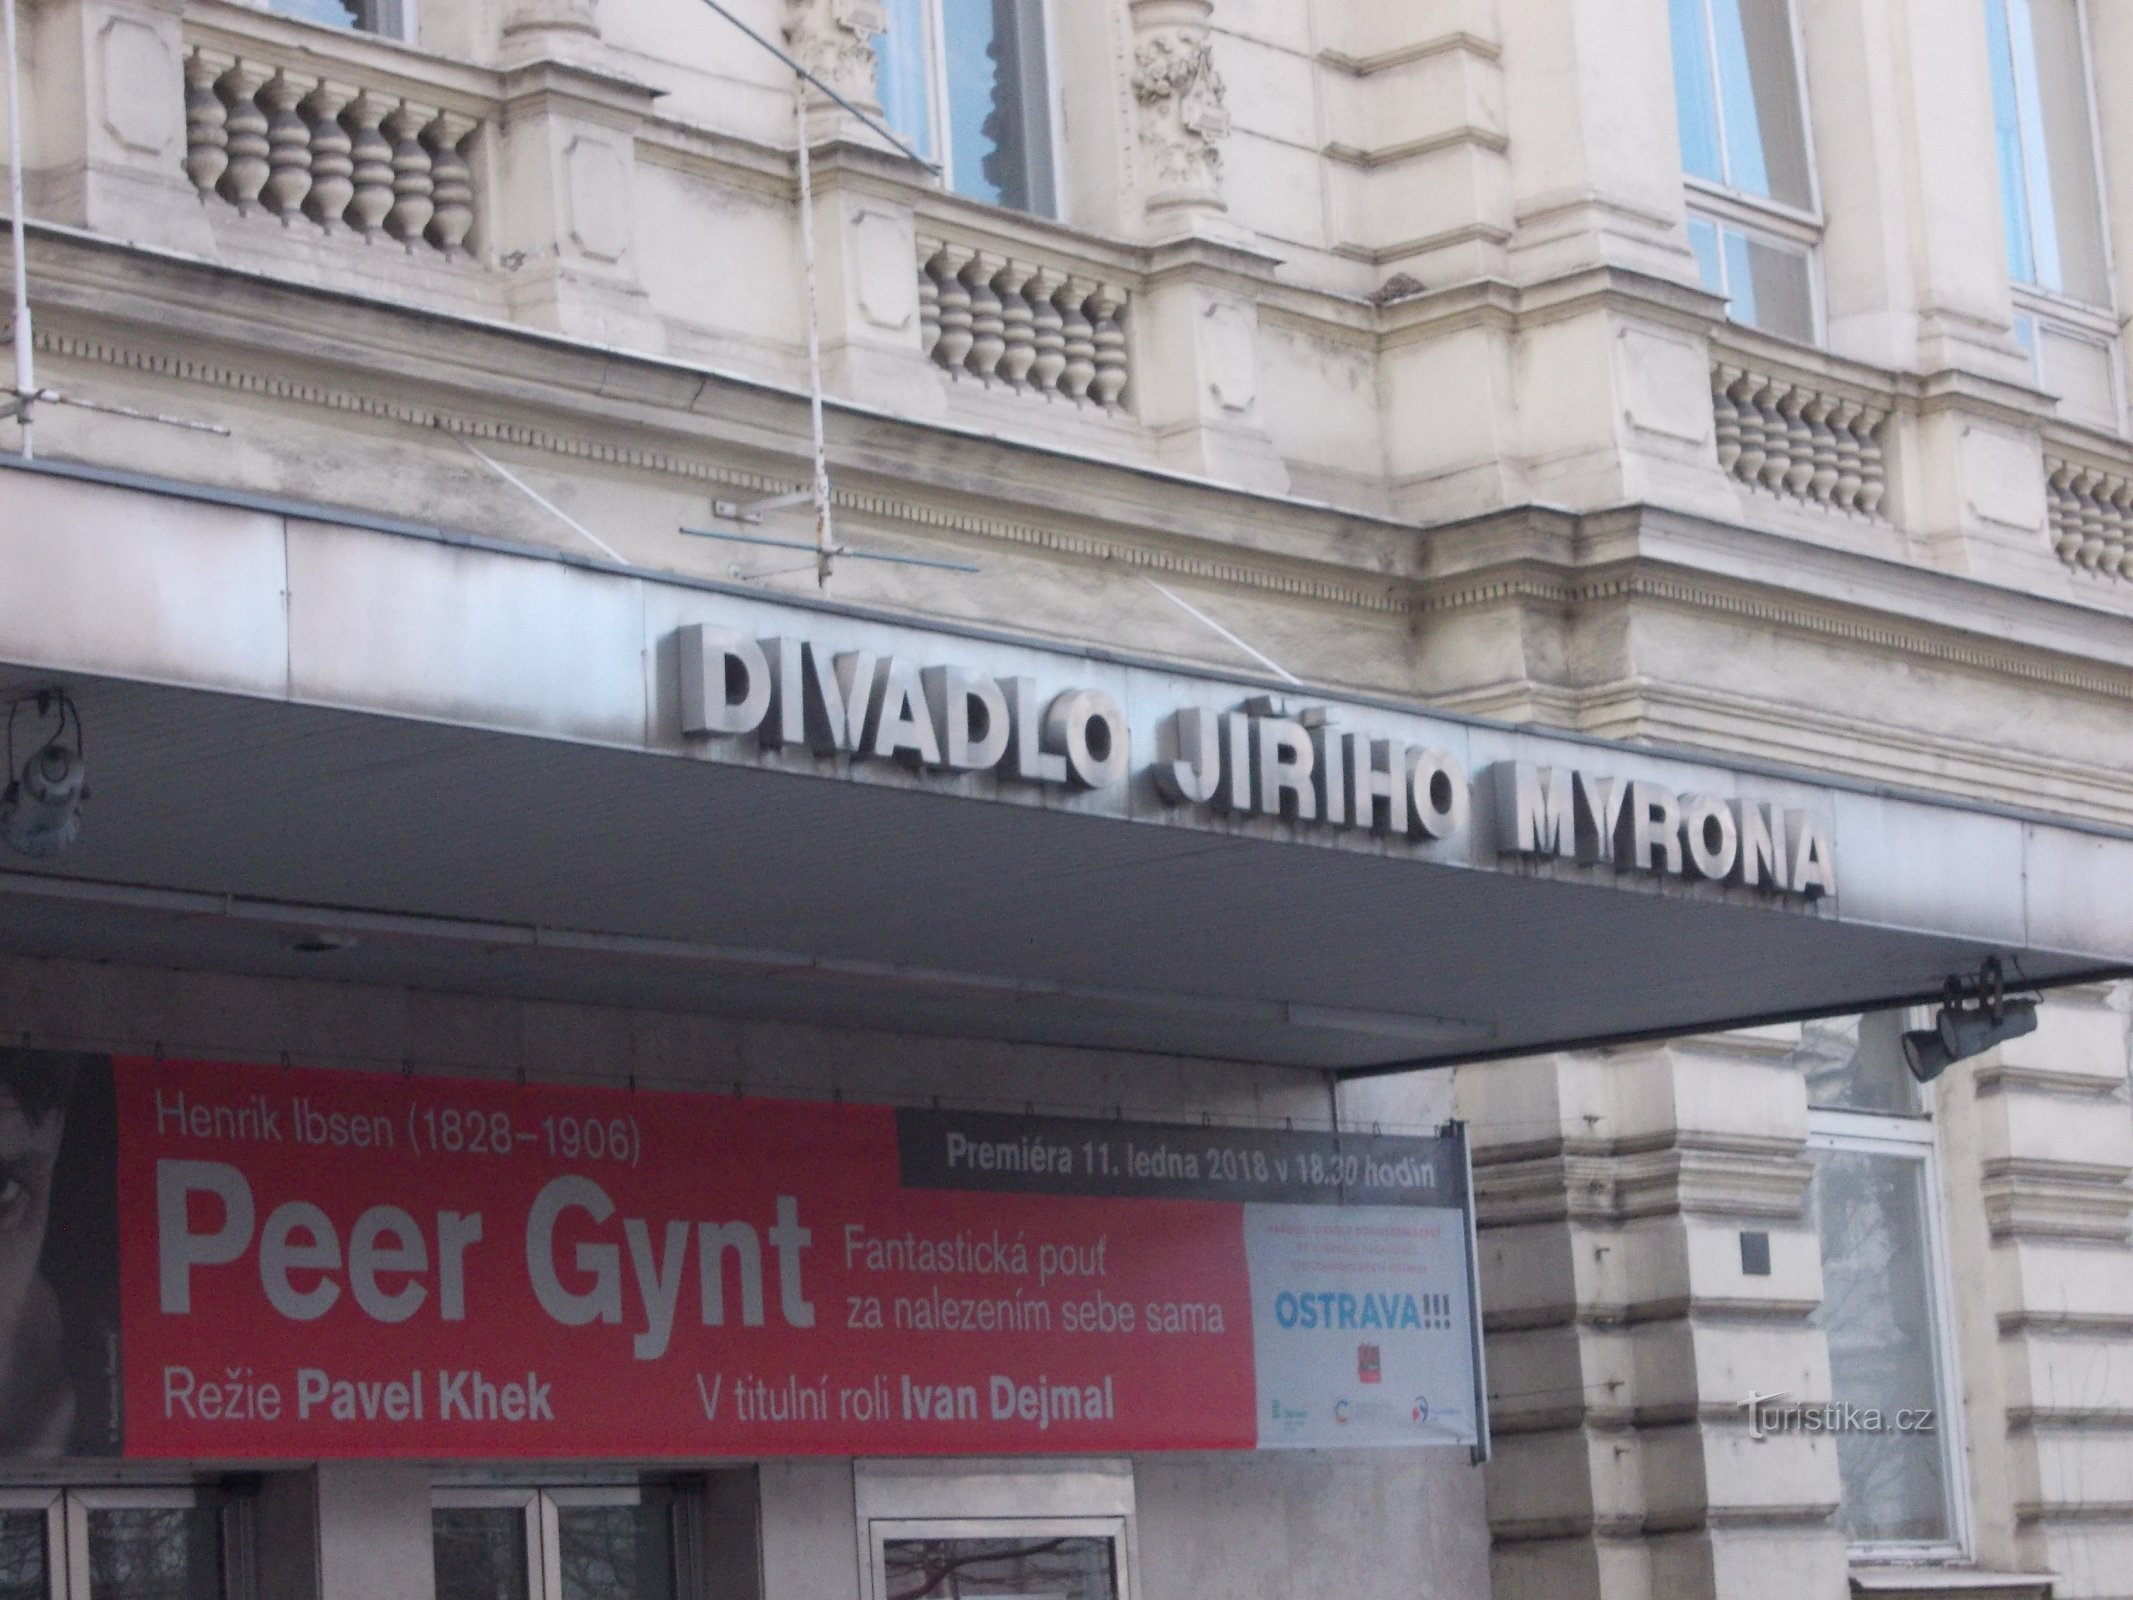 Teatr Jiří Myron z końca XIX wieku przeszedł kilka remontów do dziś